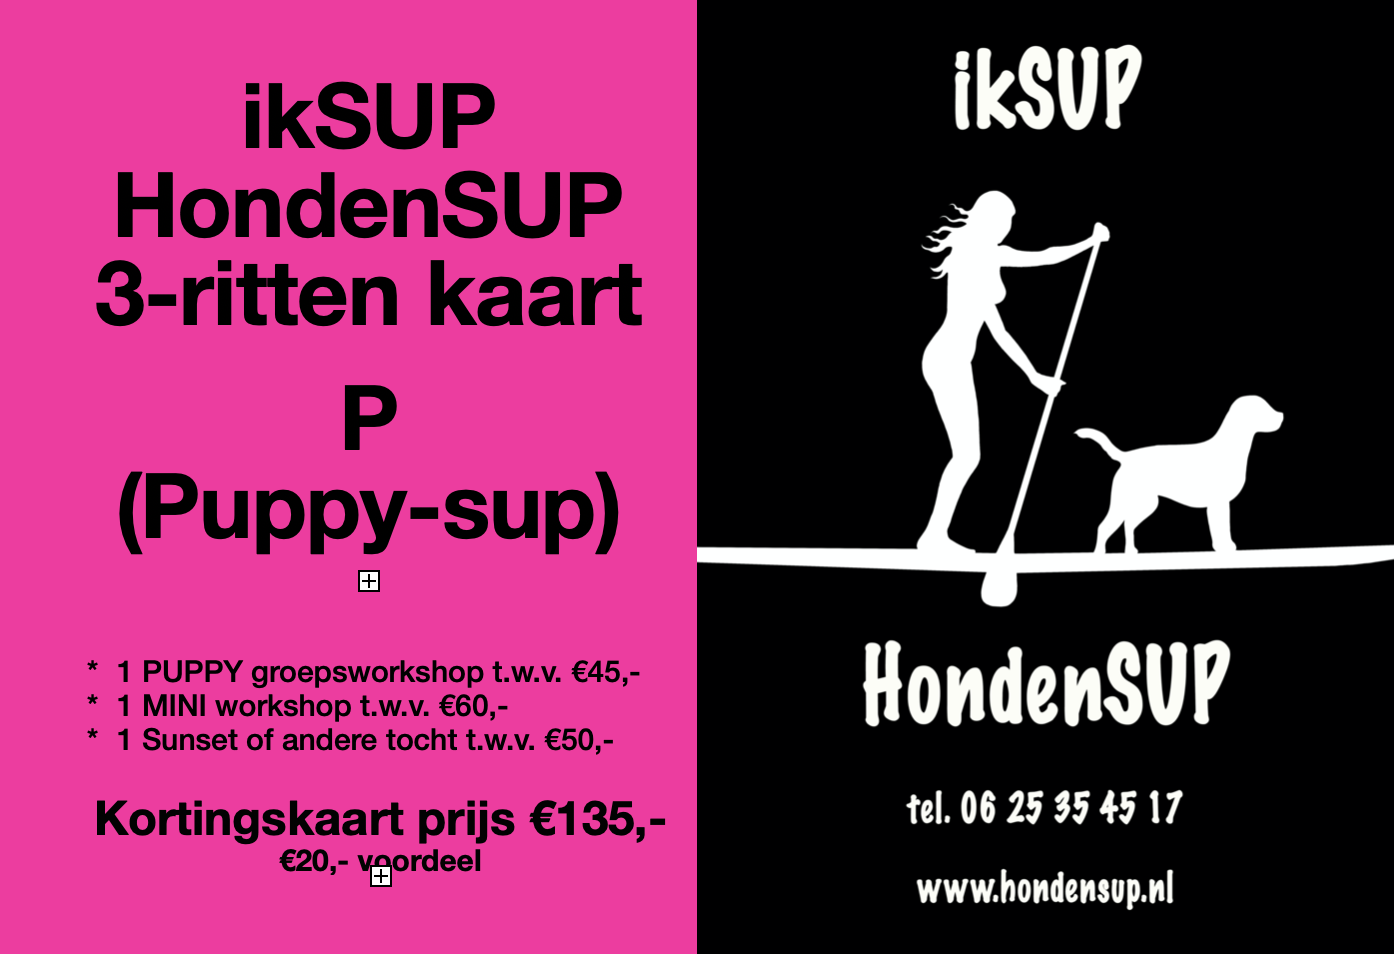 Behoort Wanorde Druppelen 3-RITTEN KORTINGSKAART P (puppy) | 🐾 ikSUP HONDENSUP NEDERLAND 🐾 |  hondensup.nl